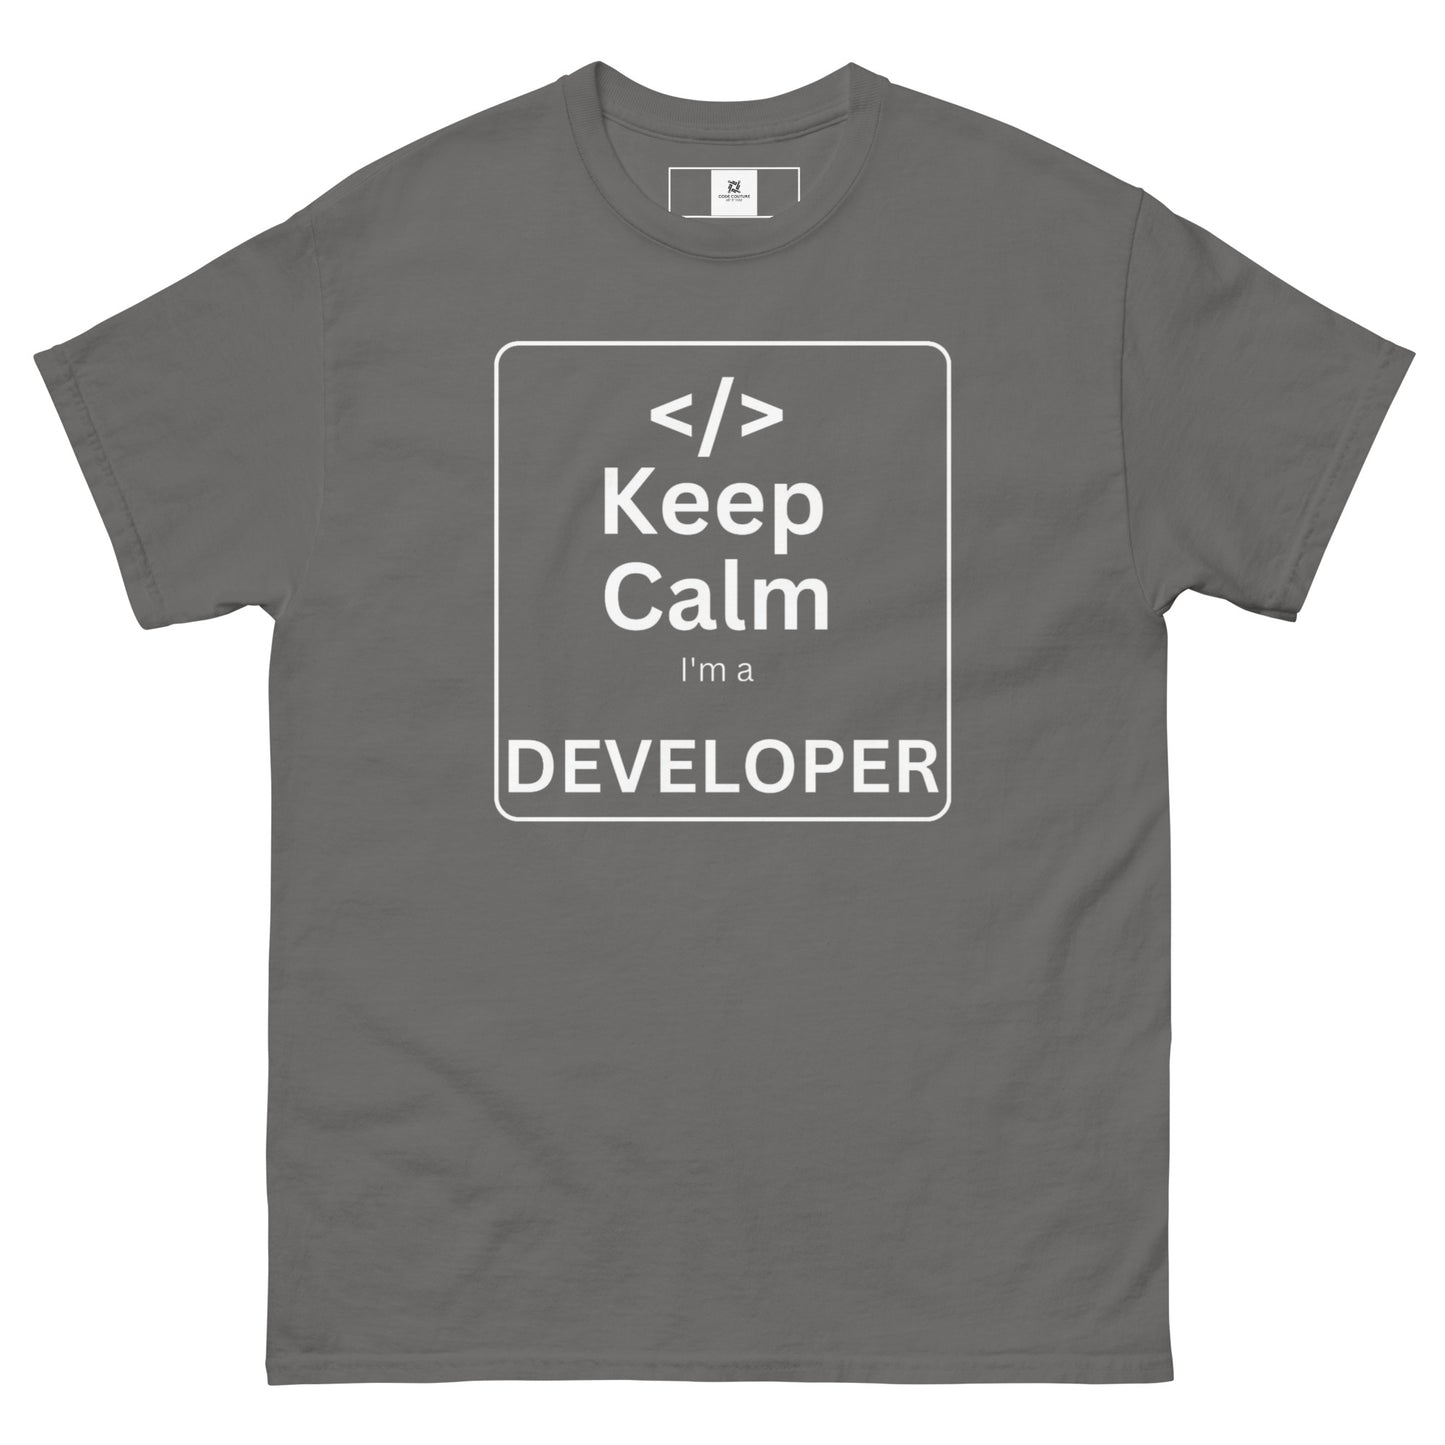 Developer - Keep Calm - Dark